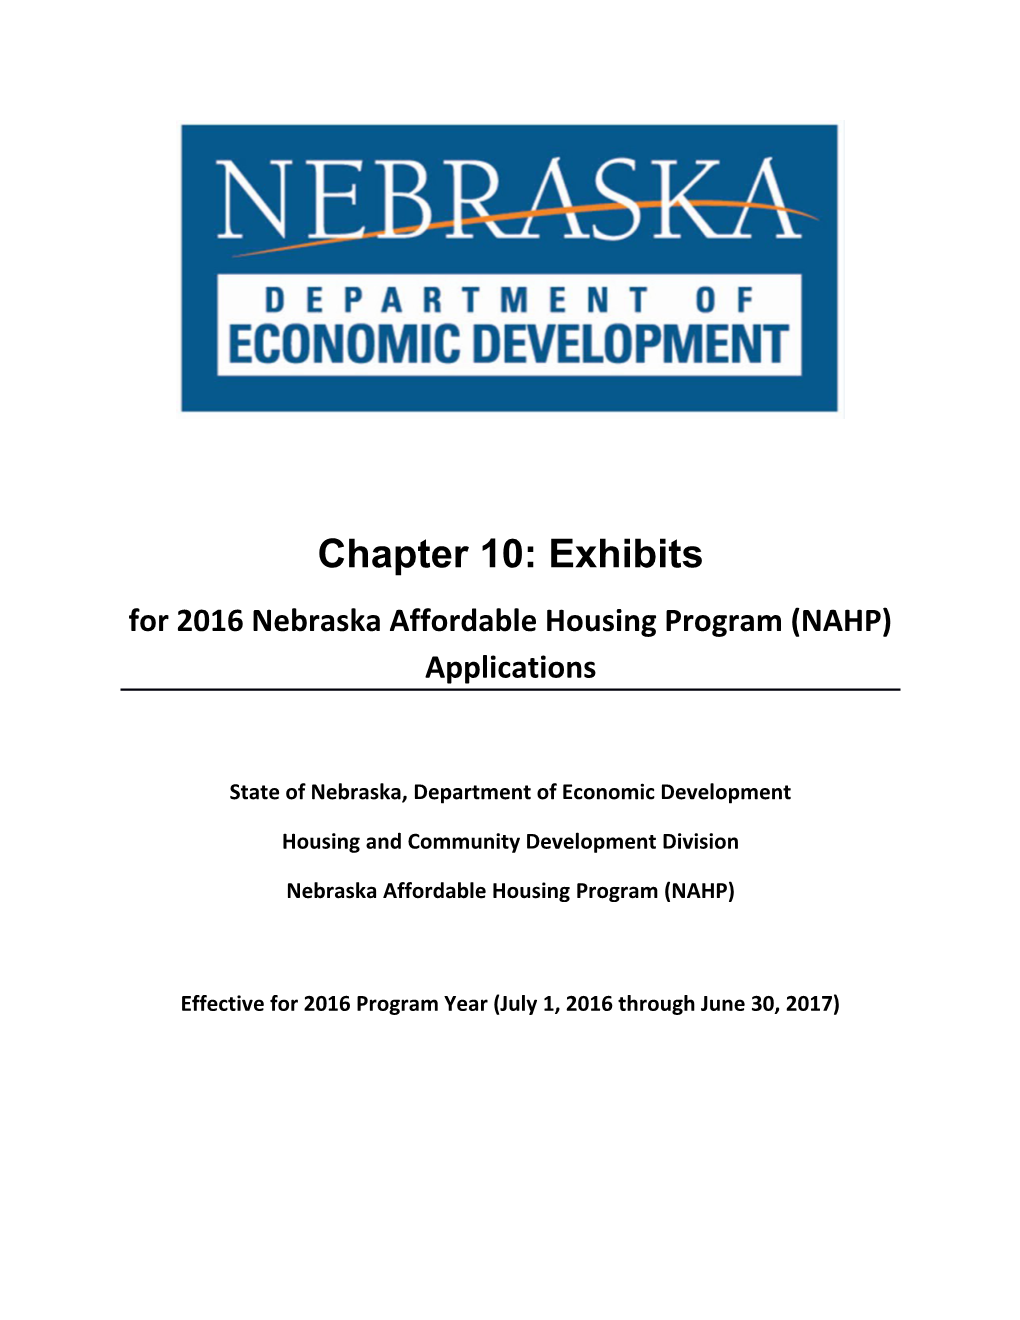 For 2016Nebraska Affordable Housing Program (NAHP) Applications